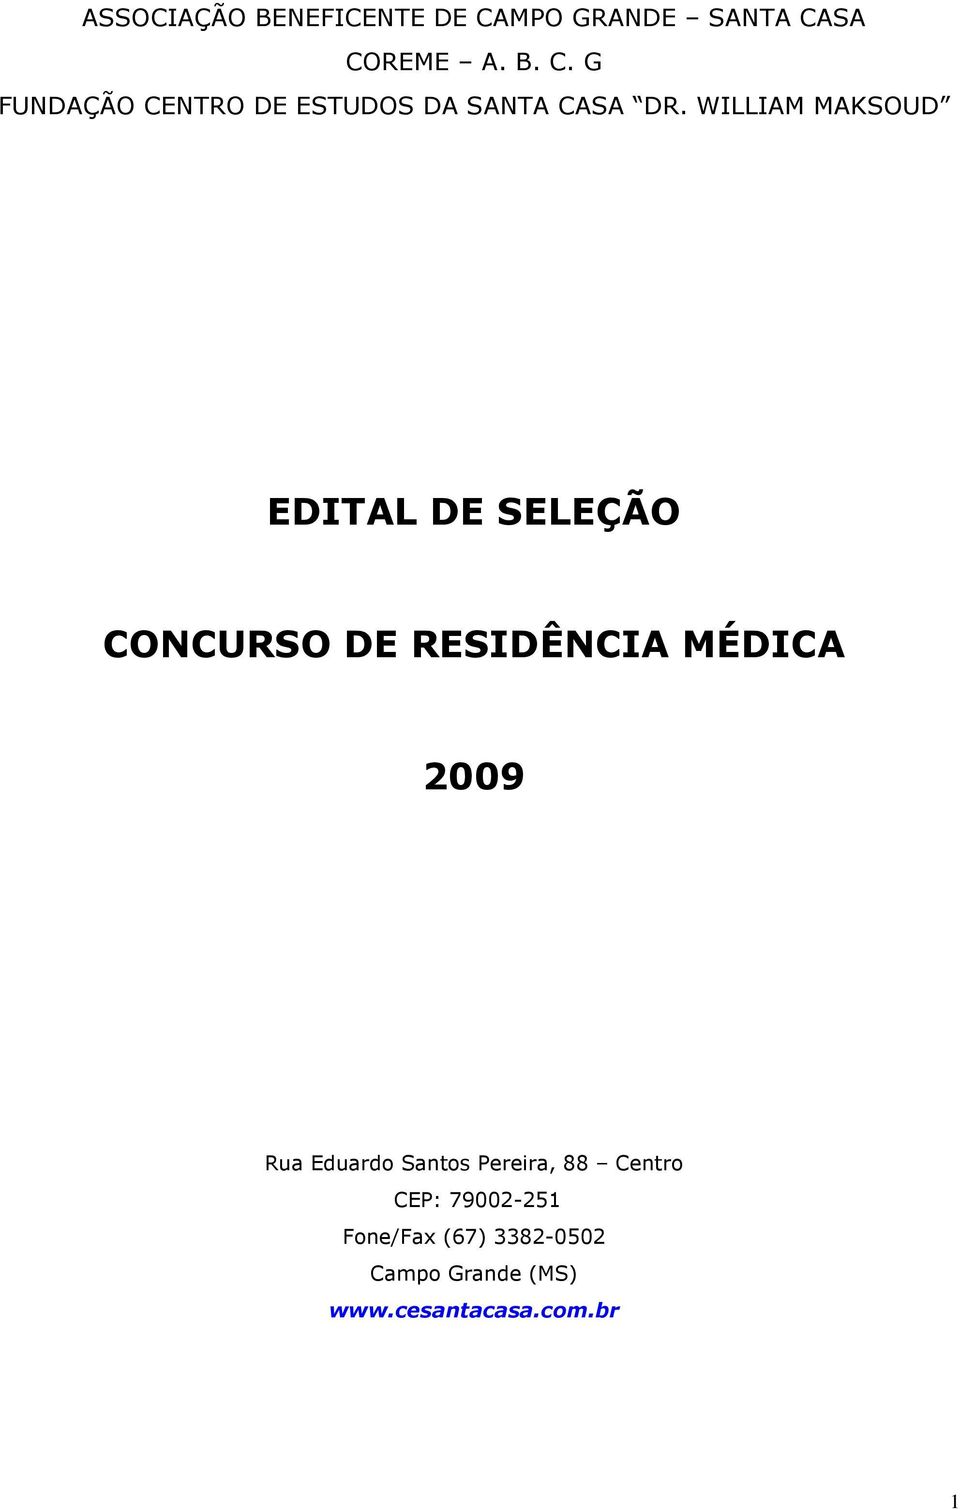 Eduardo Santos Pereira, 88 Centro CEP: 79002-251 Fone/Fax (67) 3382-0502